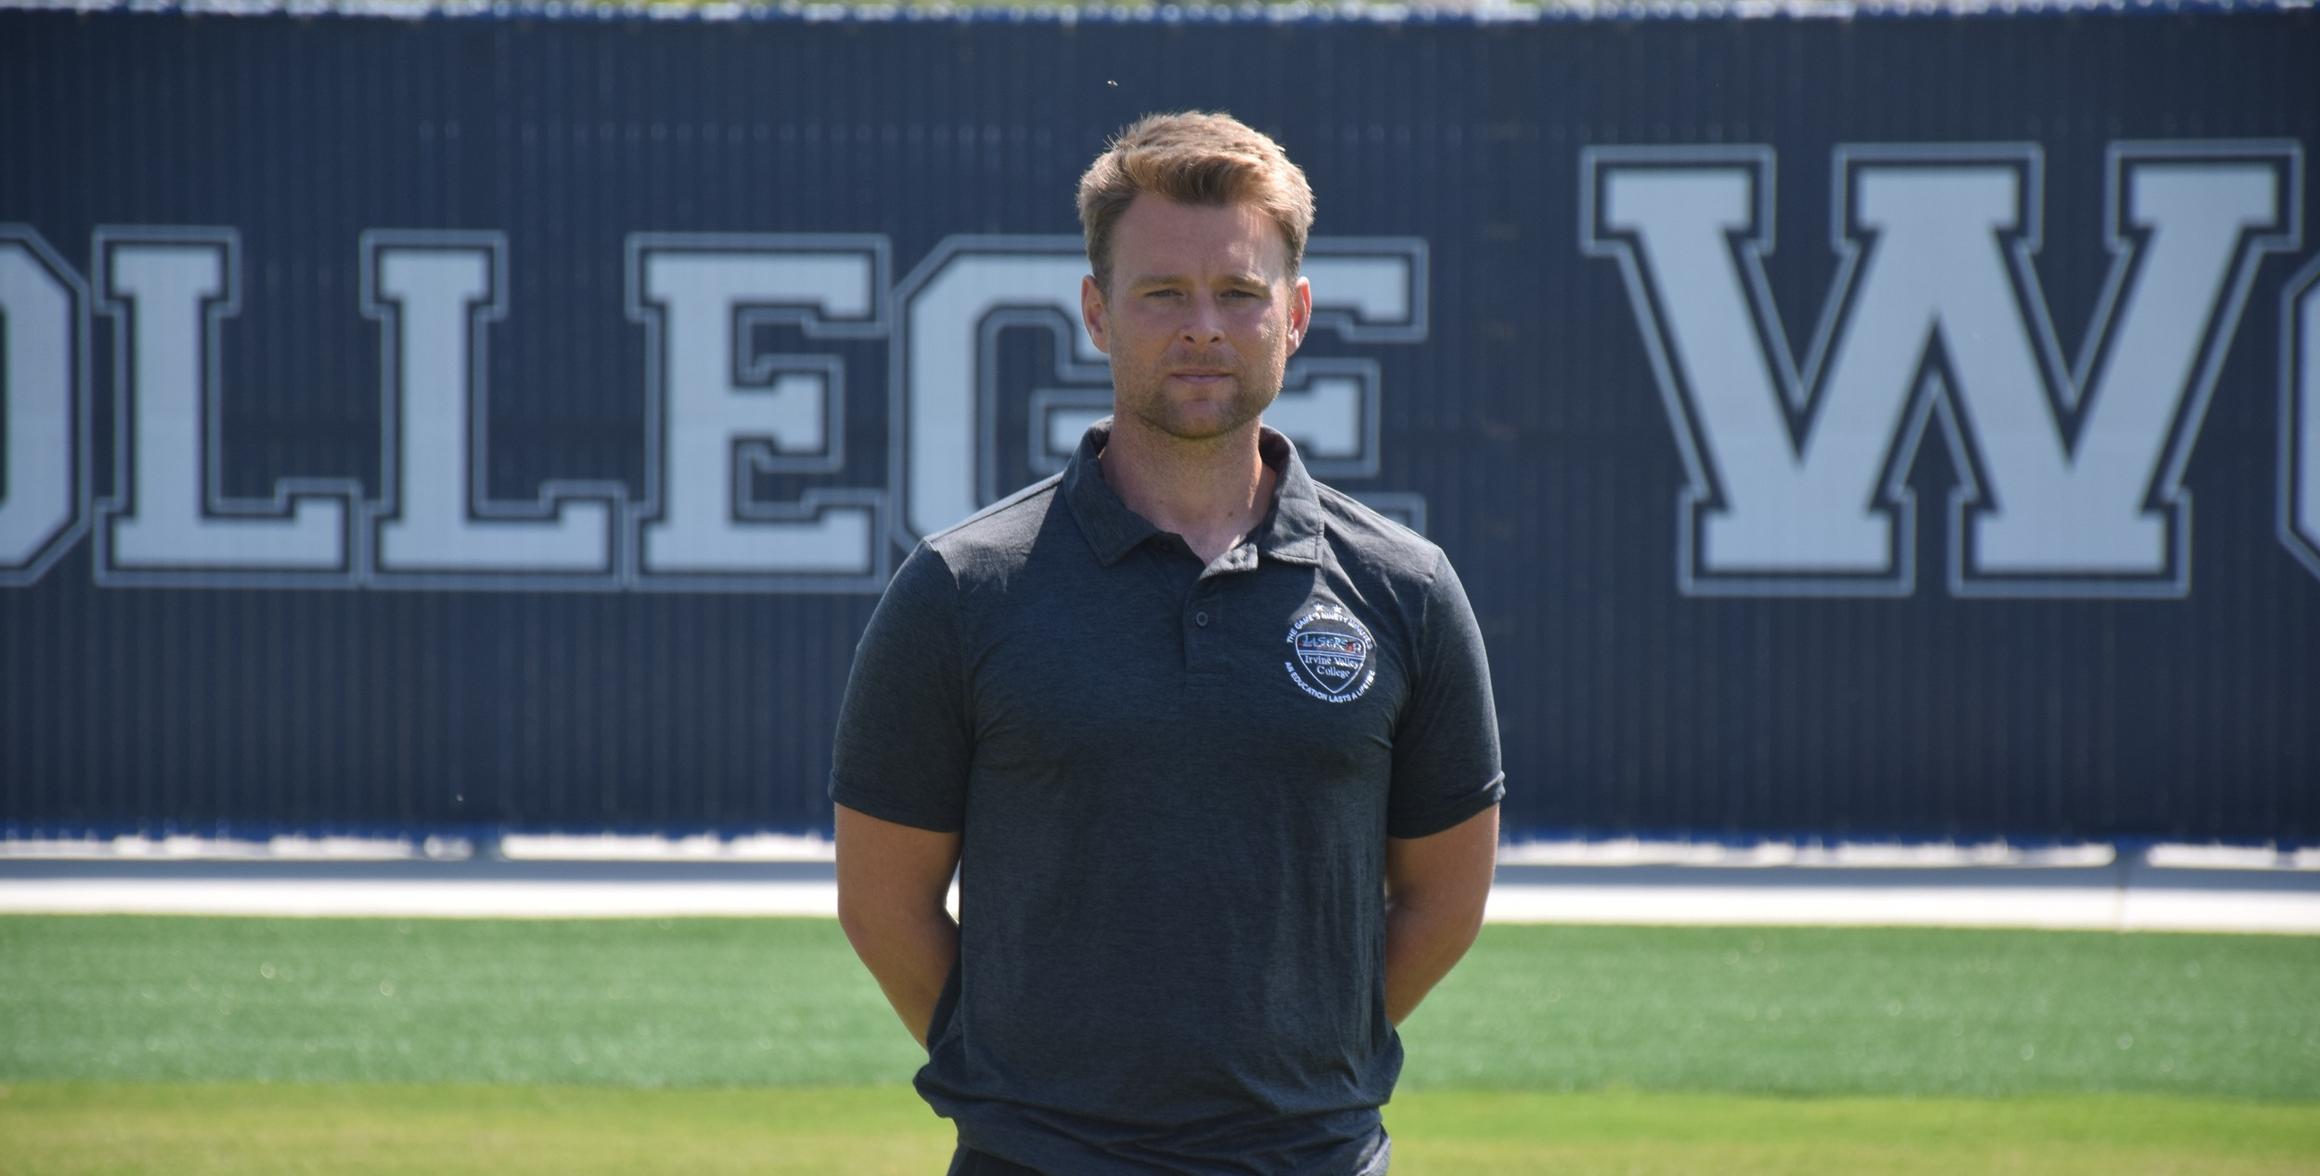 IVC announces Tom Lancaster as new women's soccer coach